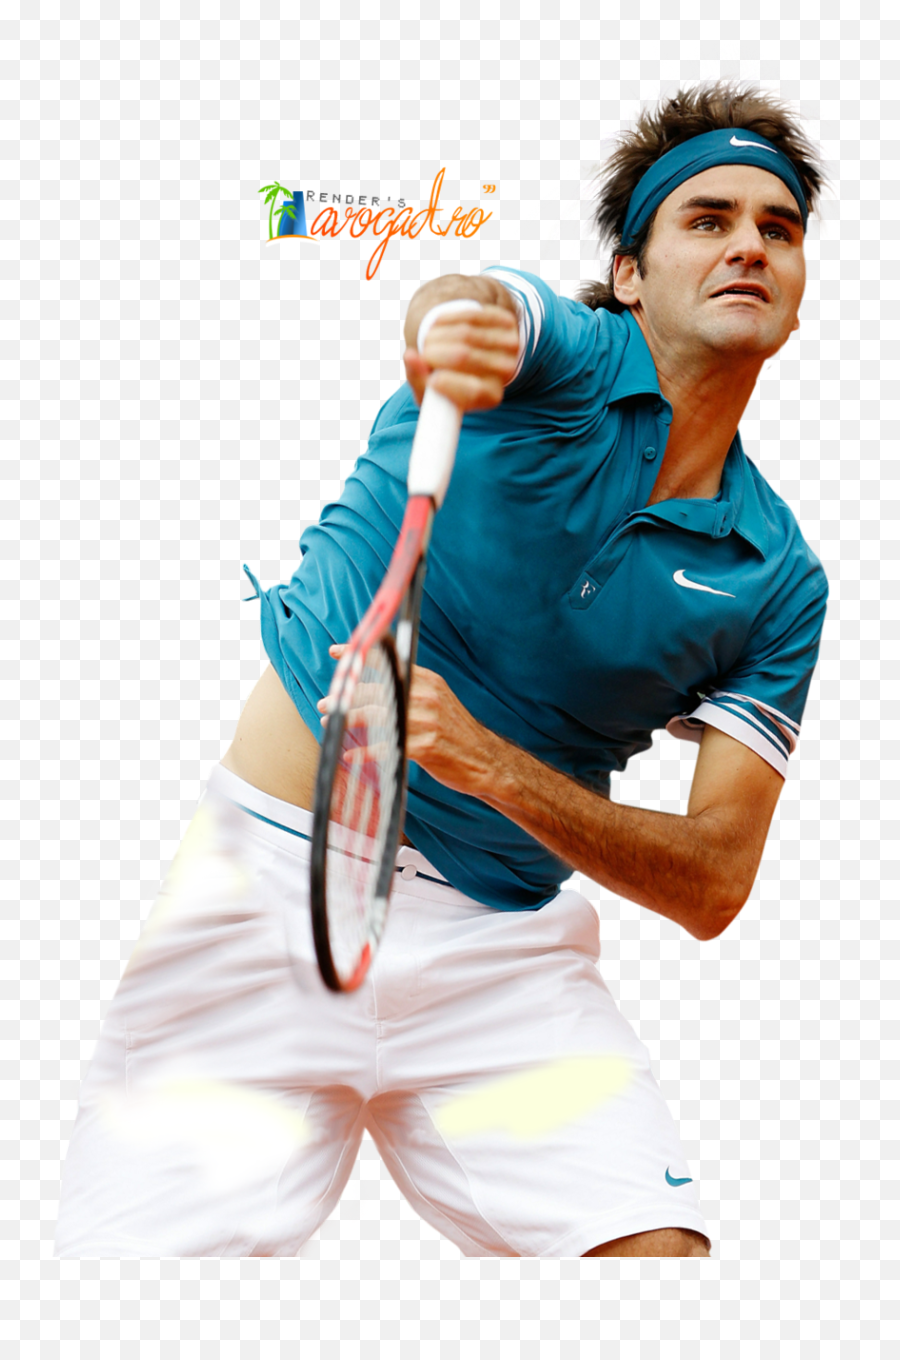 Roger Federer Image Hq Png Image - Transparent Roger Federer Png Emoji,Roger Federer Emoji